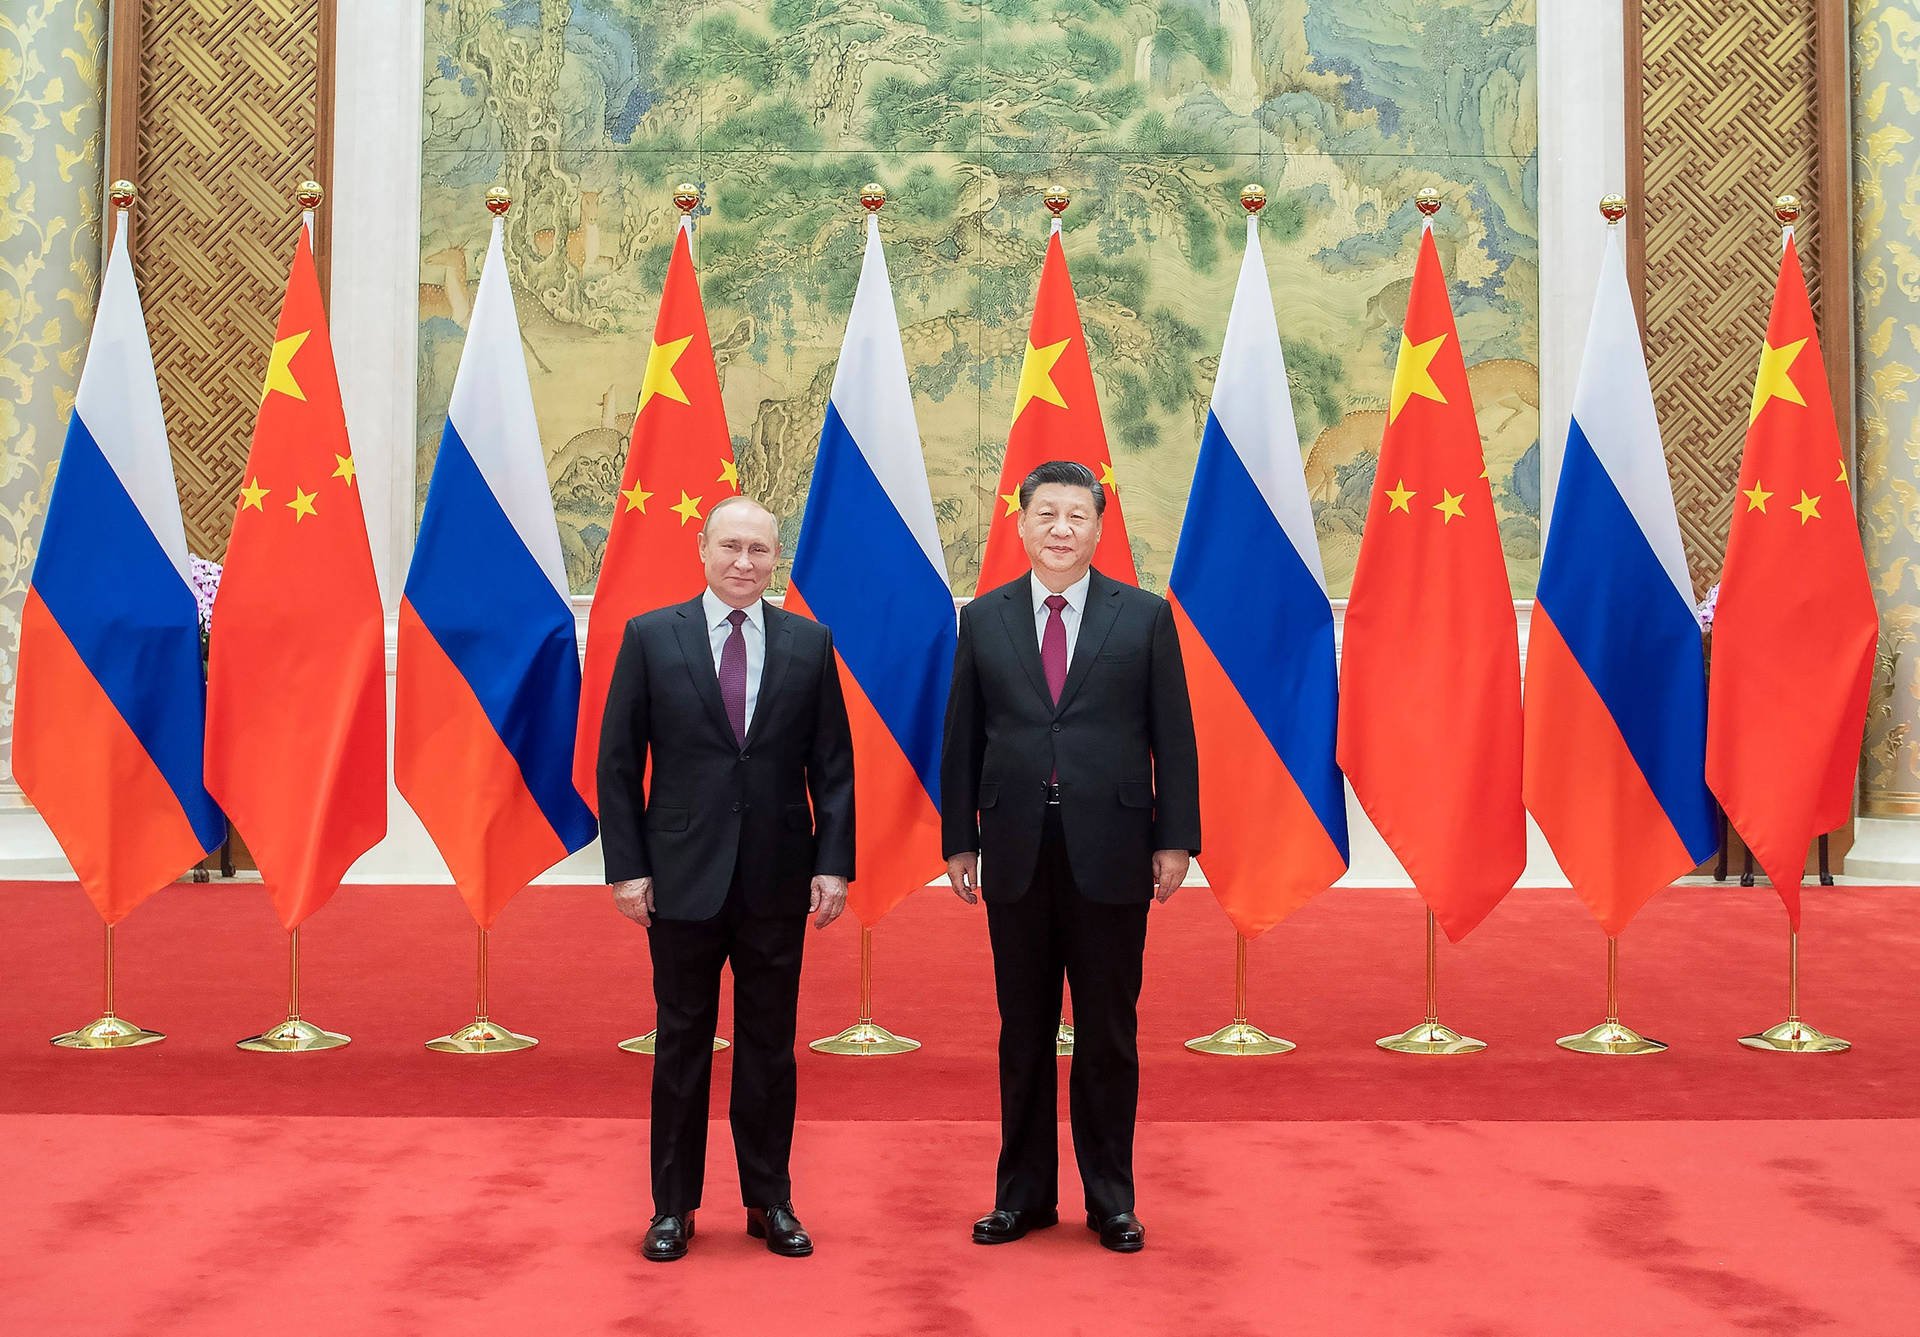 Vladimir Putin And Xi Jinping Background